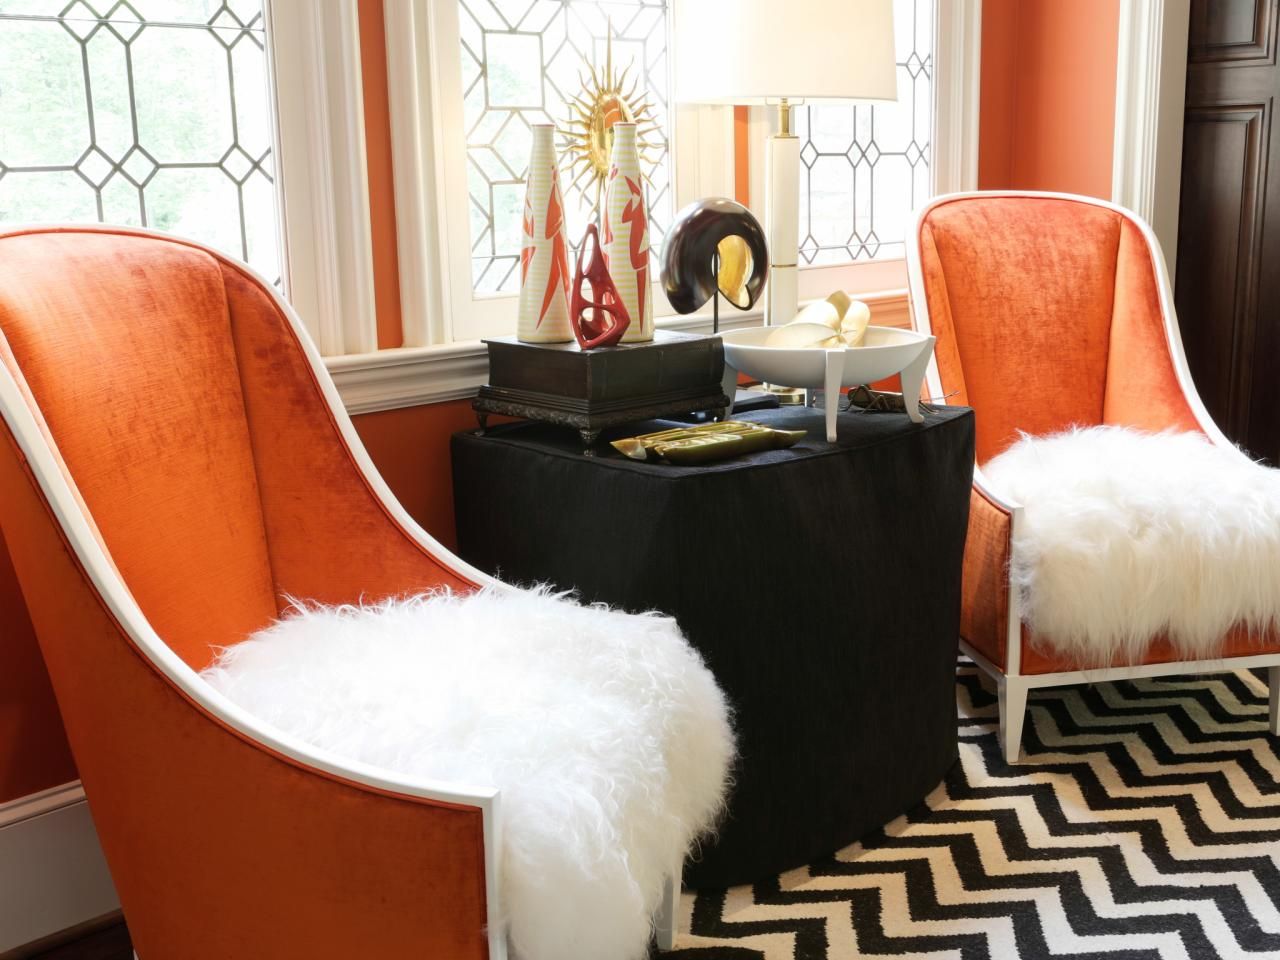 How To Tone Down An Orange Chair: Home Decor Help